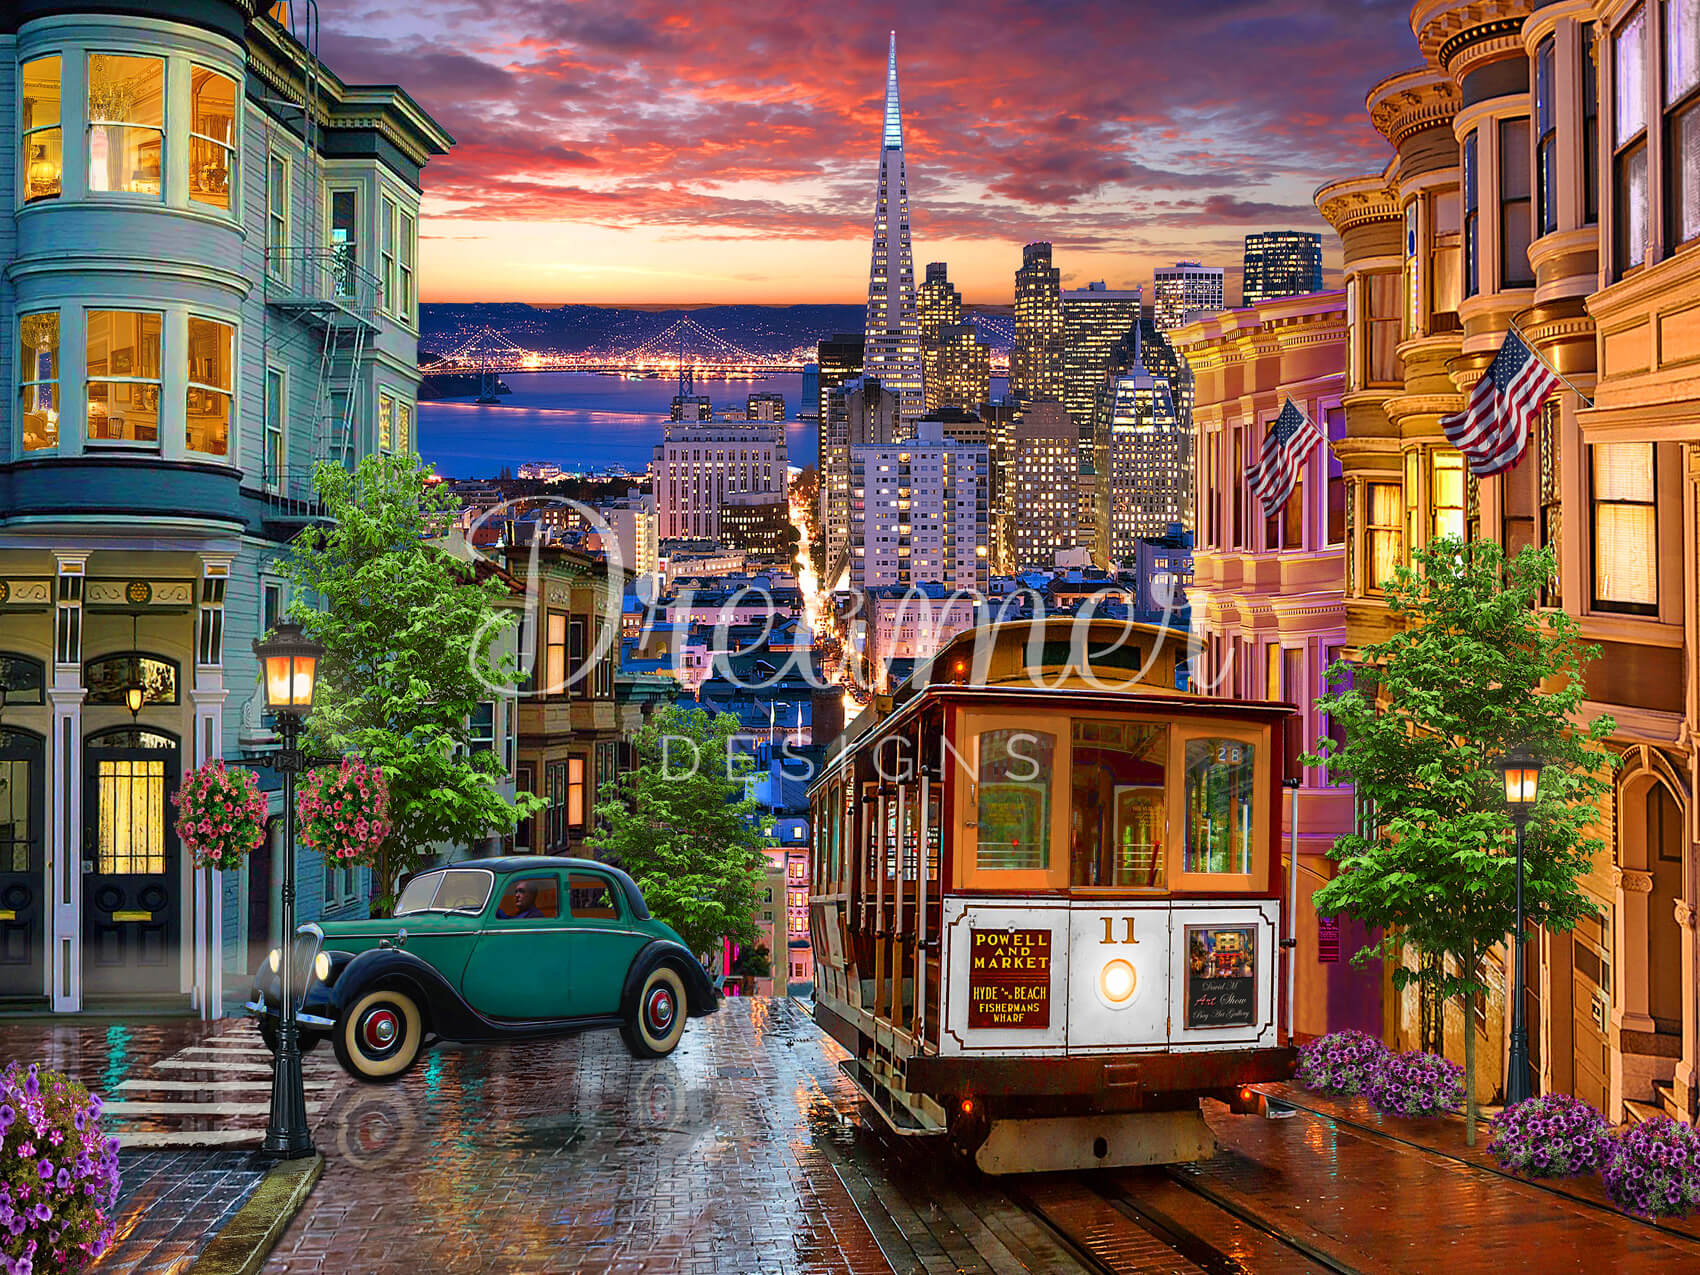 San Francisco Trolley